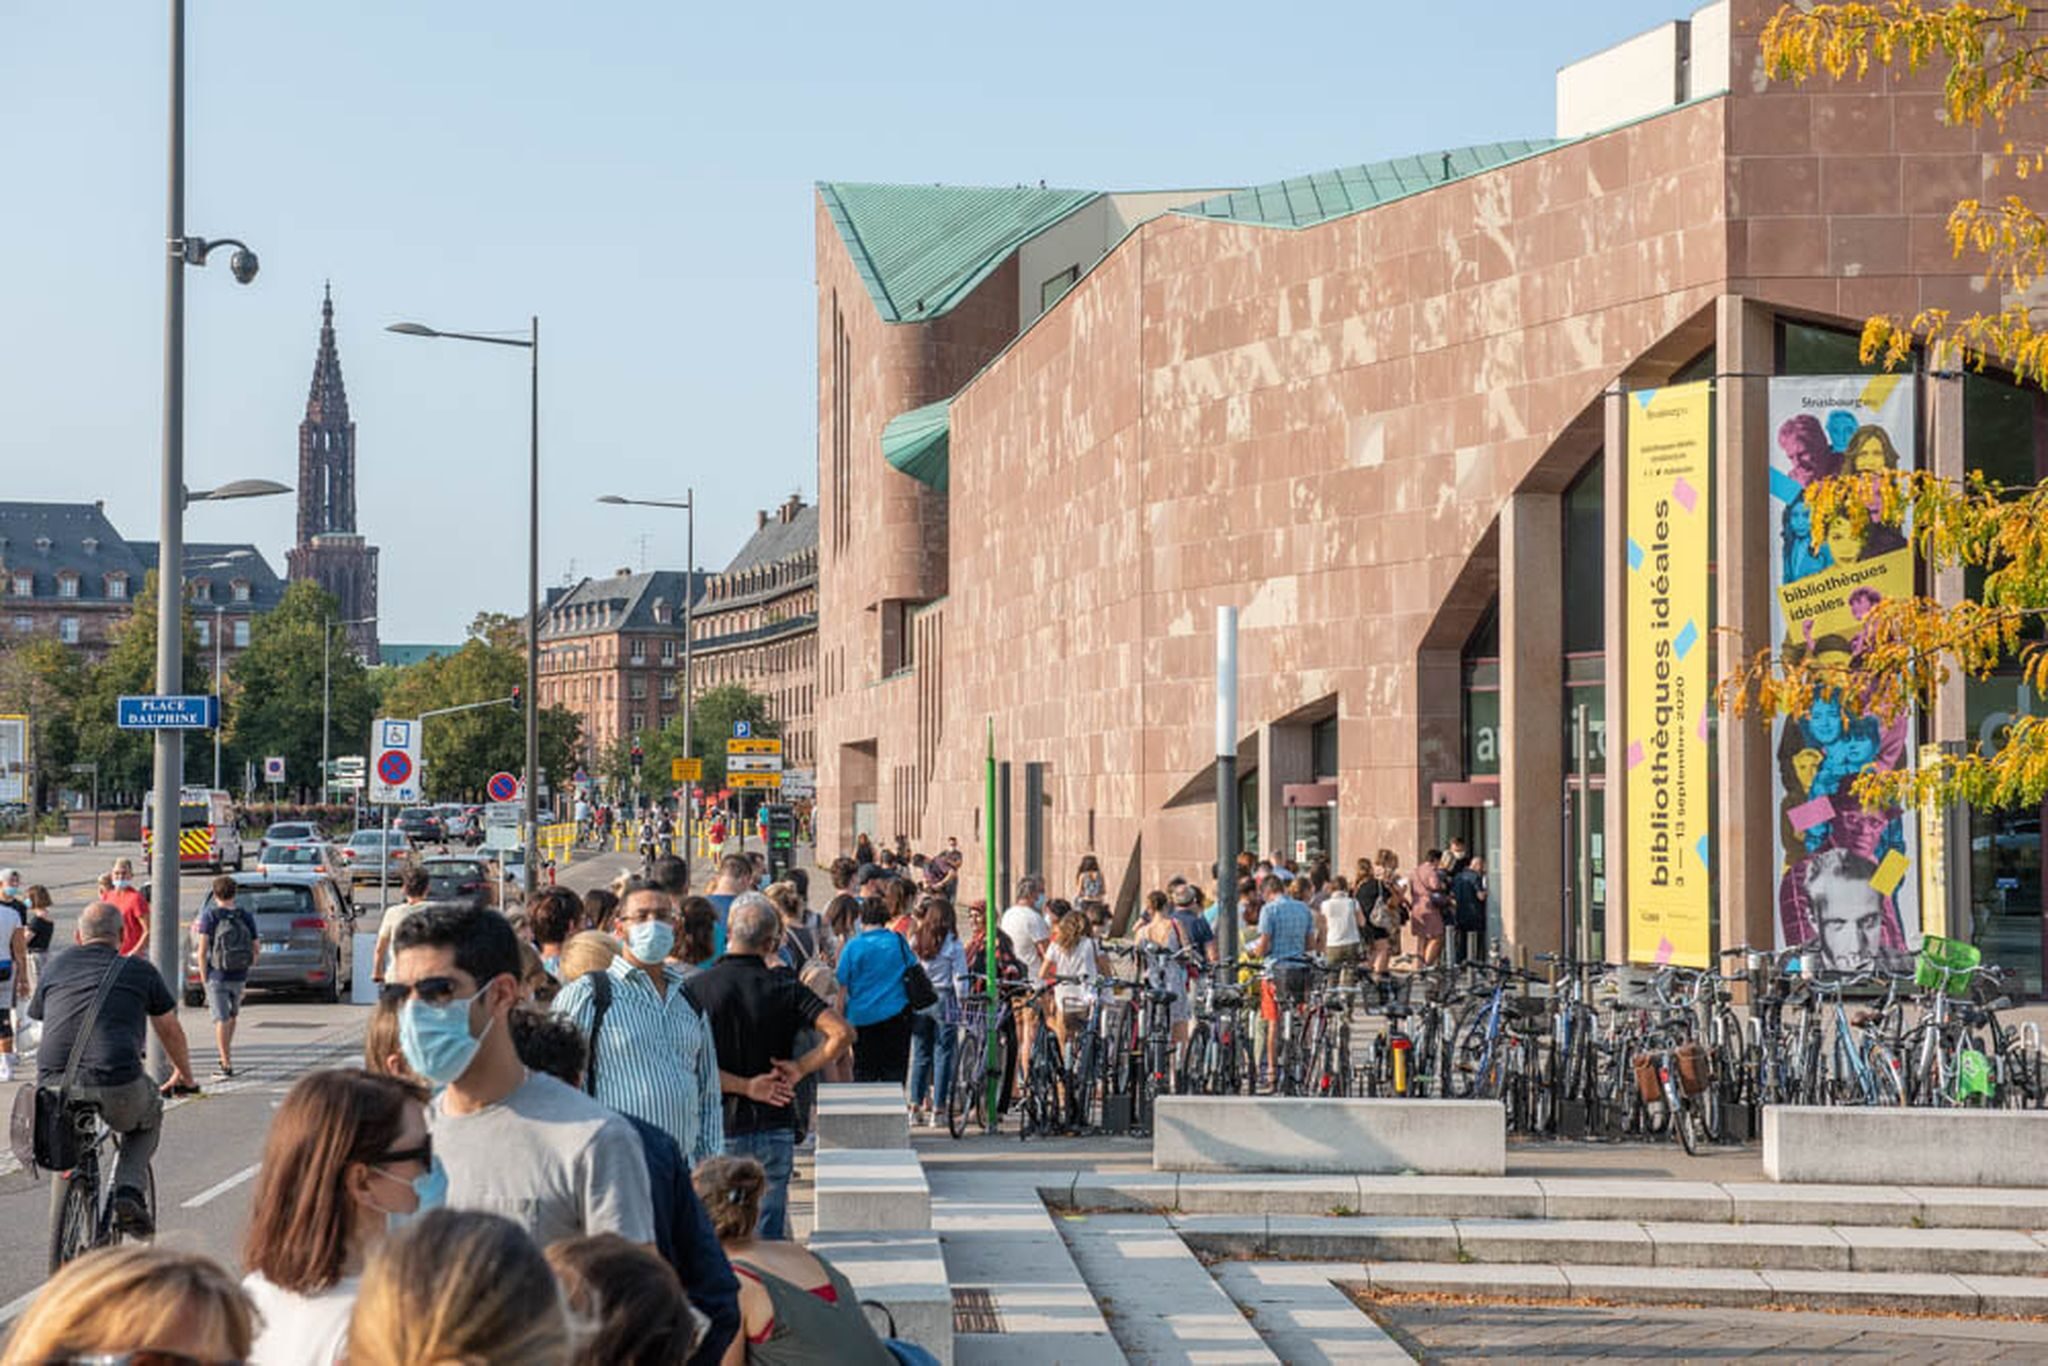 Les Bibliothèques idéales prennent le pouvoir dans 12 lieux en ville